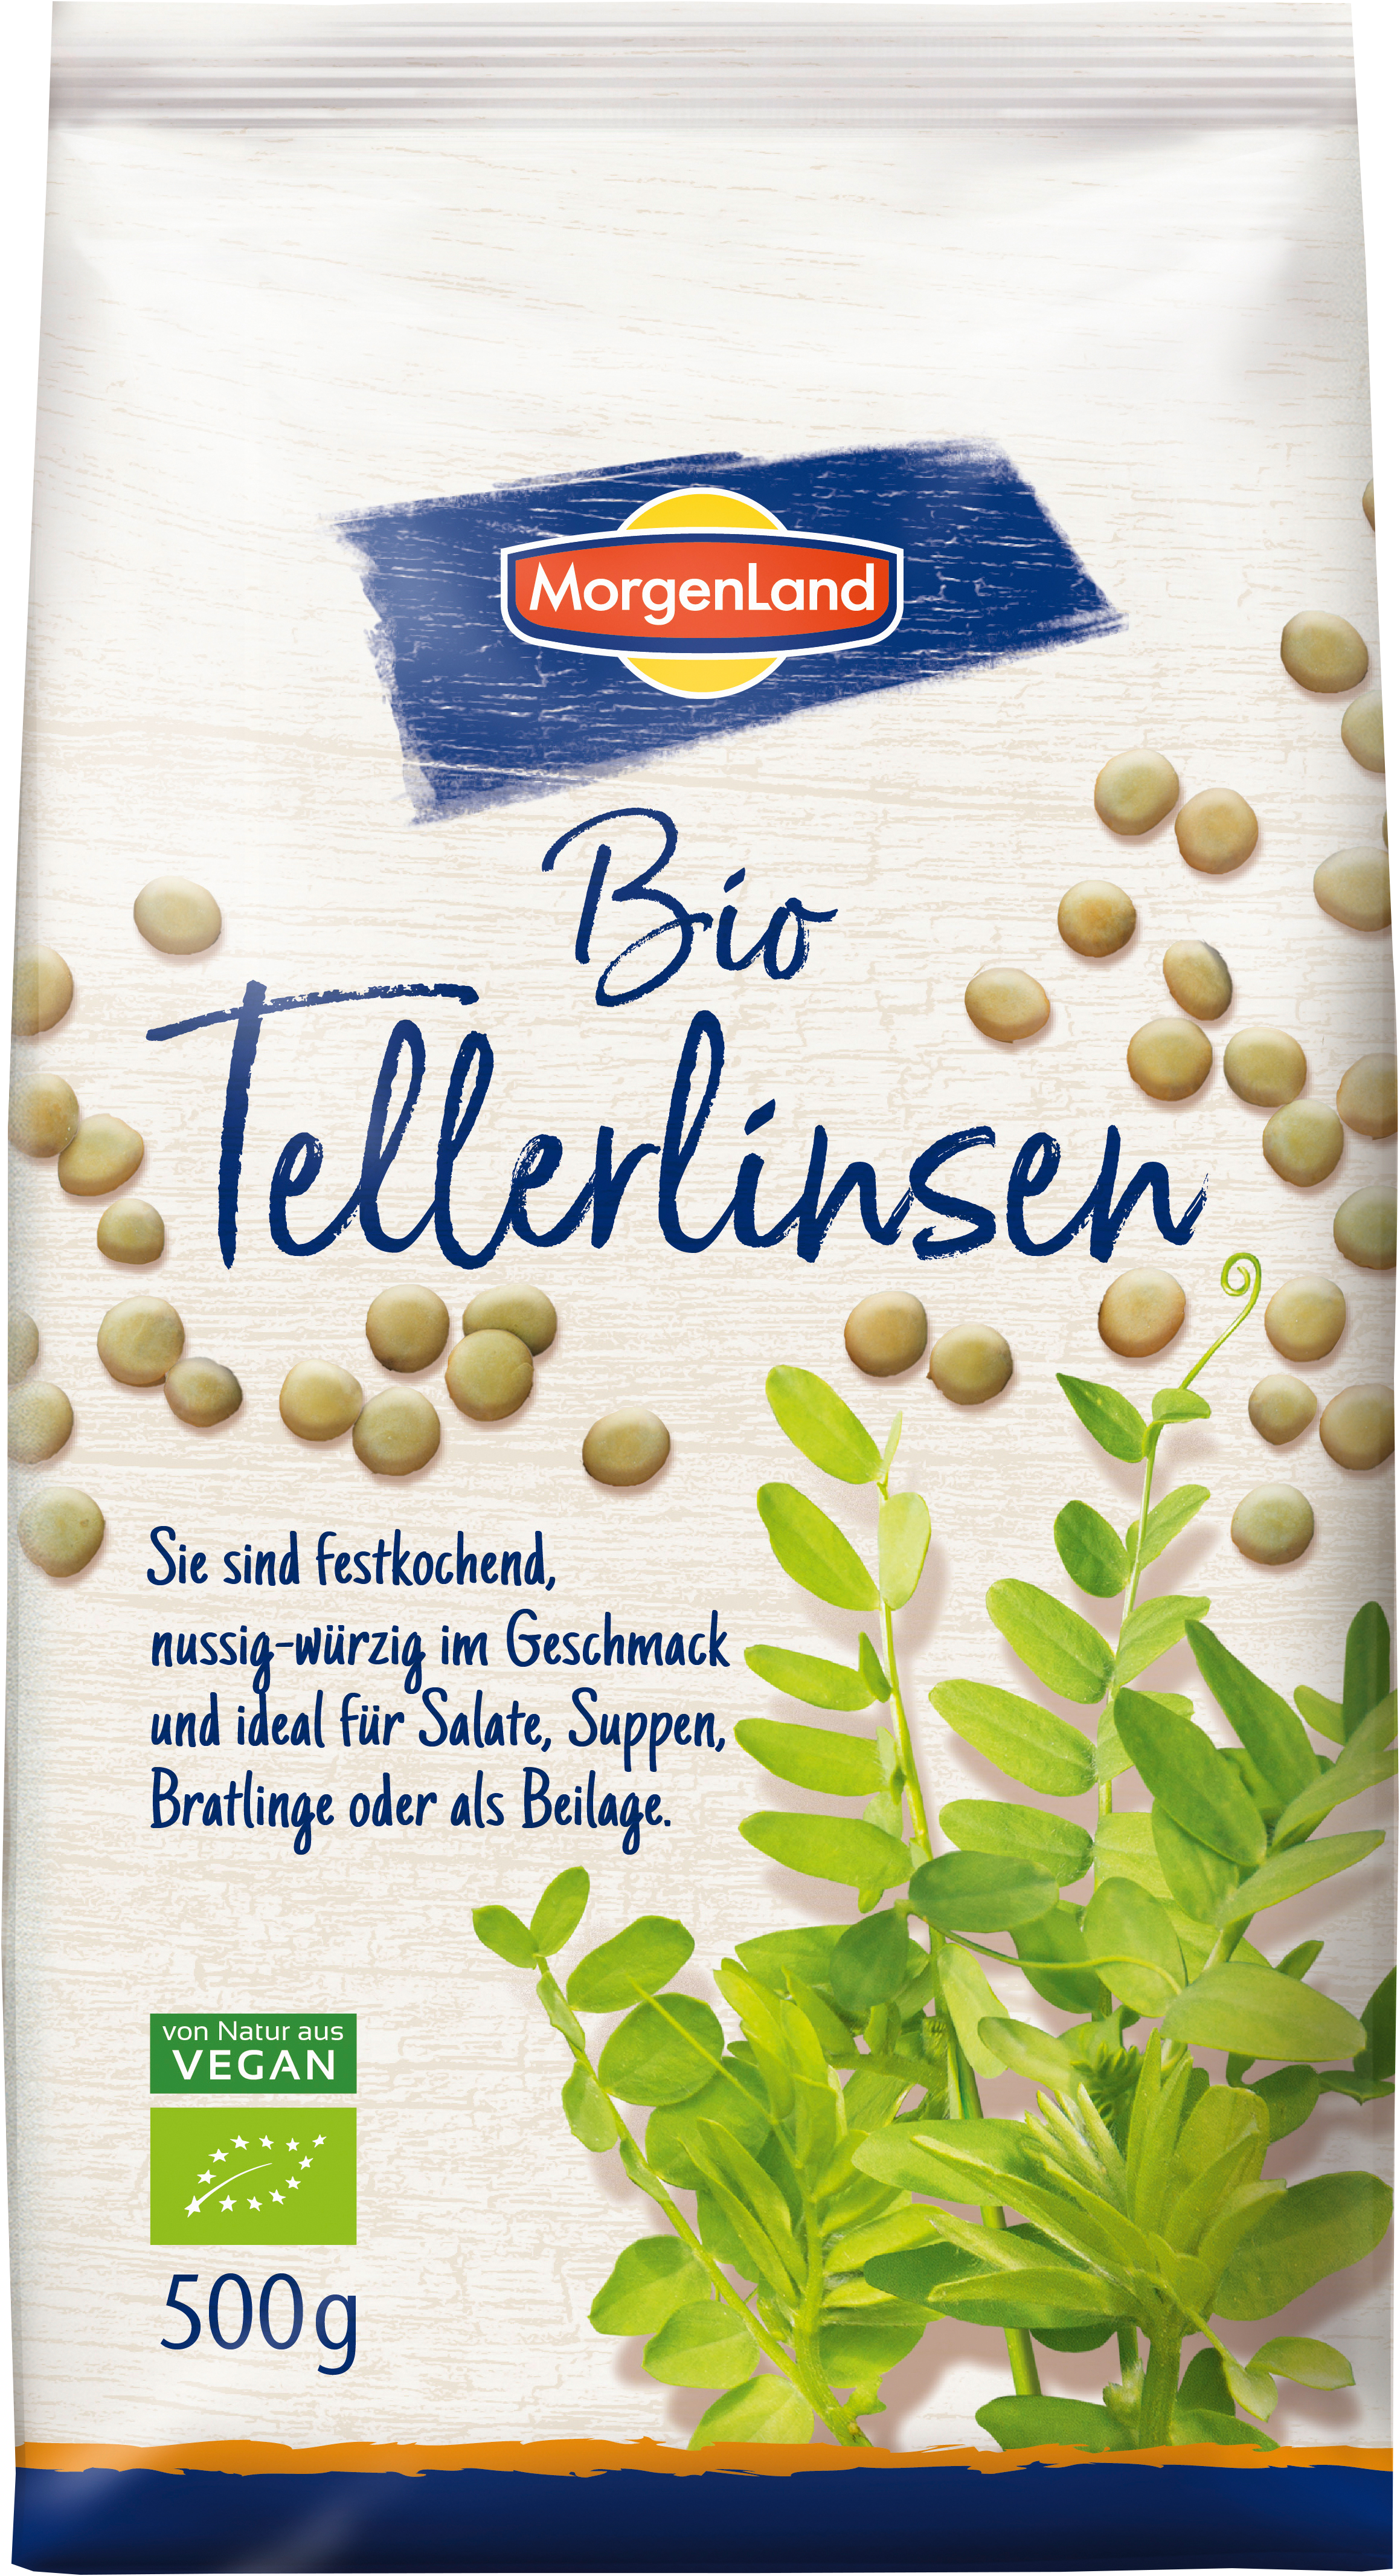 MorgenLand Tellerlinsen 500g/nl